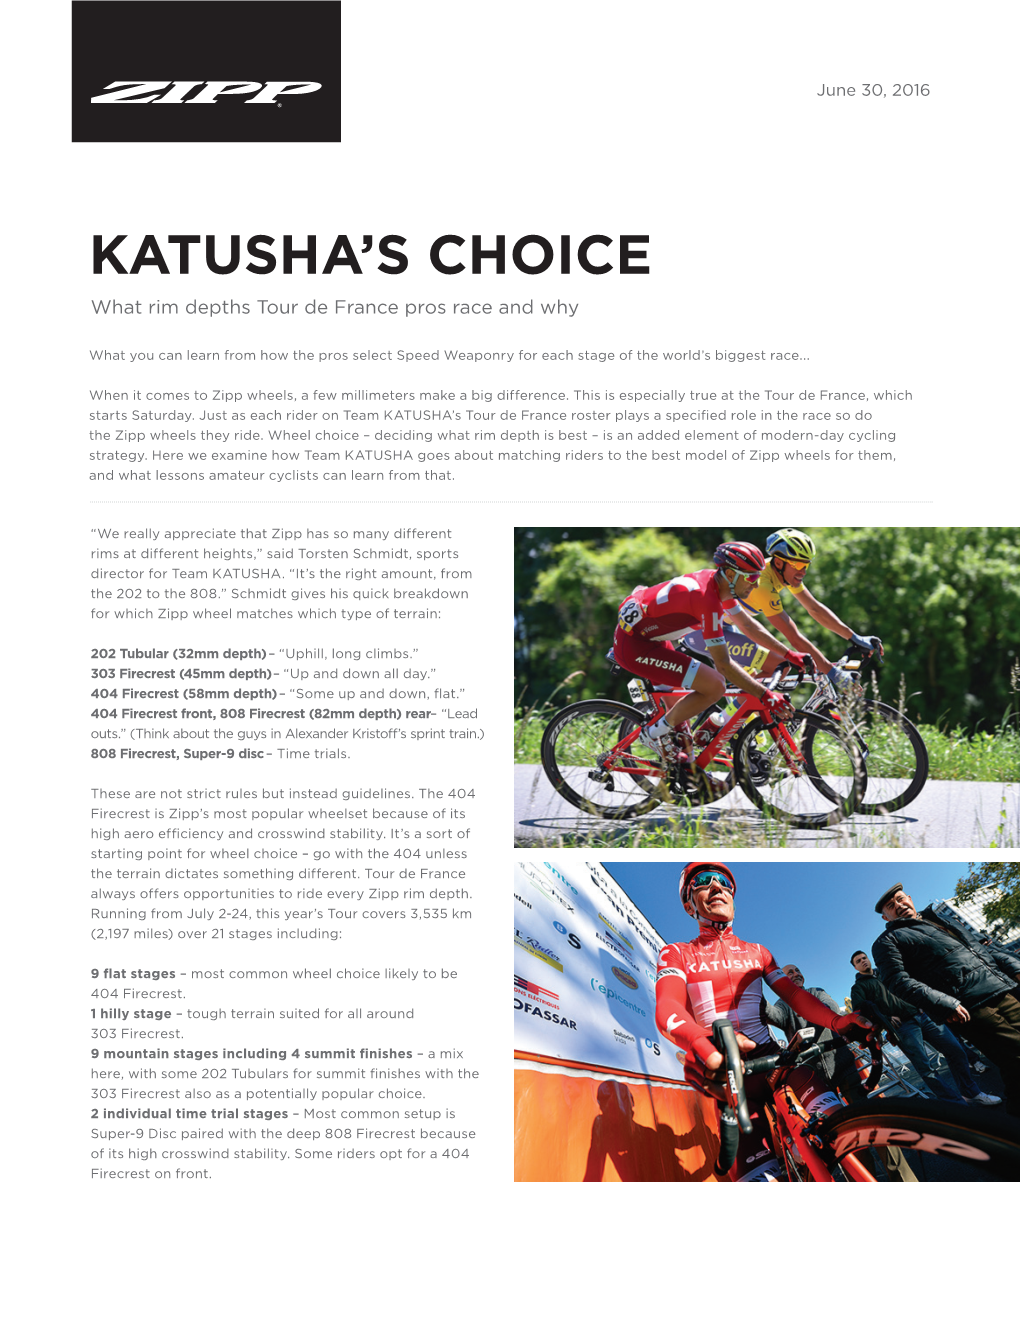 Katusha's Choice